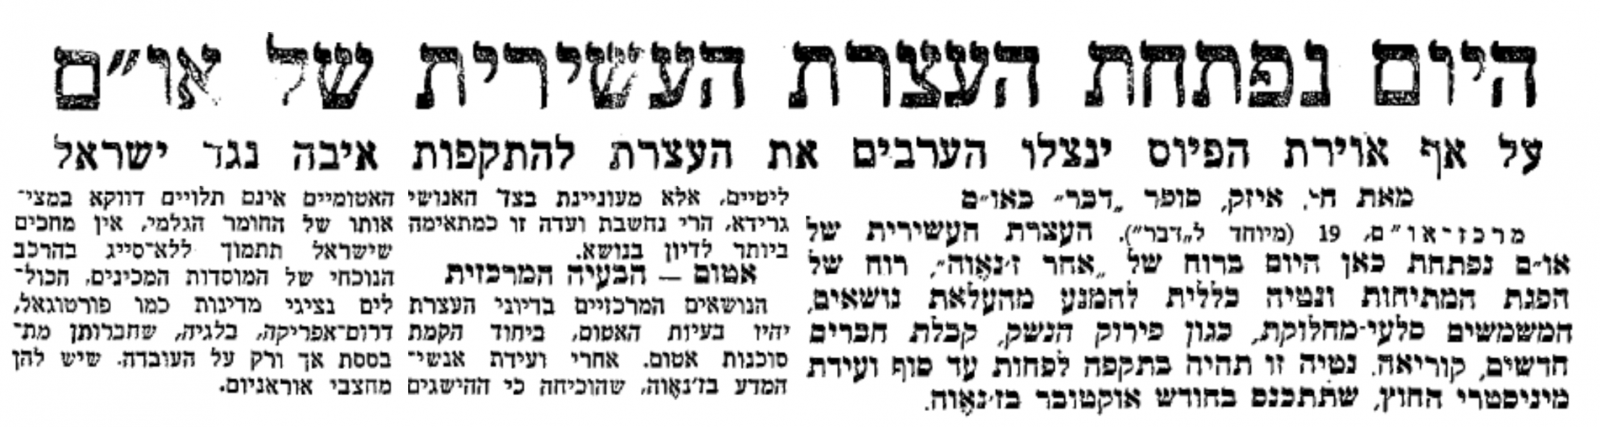 האם הערבים יתקפו את ישראל בעצרת האו"ם? "דבר", 20.9.1955. הקליקו לצפייה במסך מלא